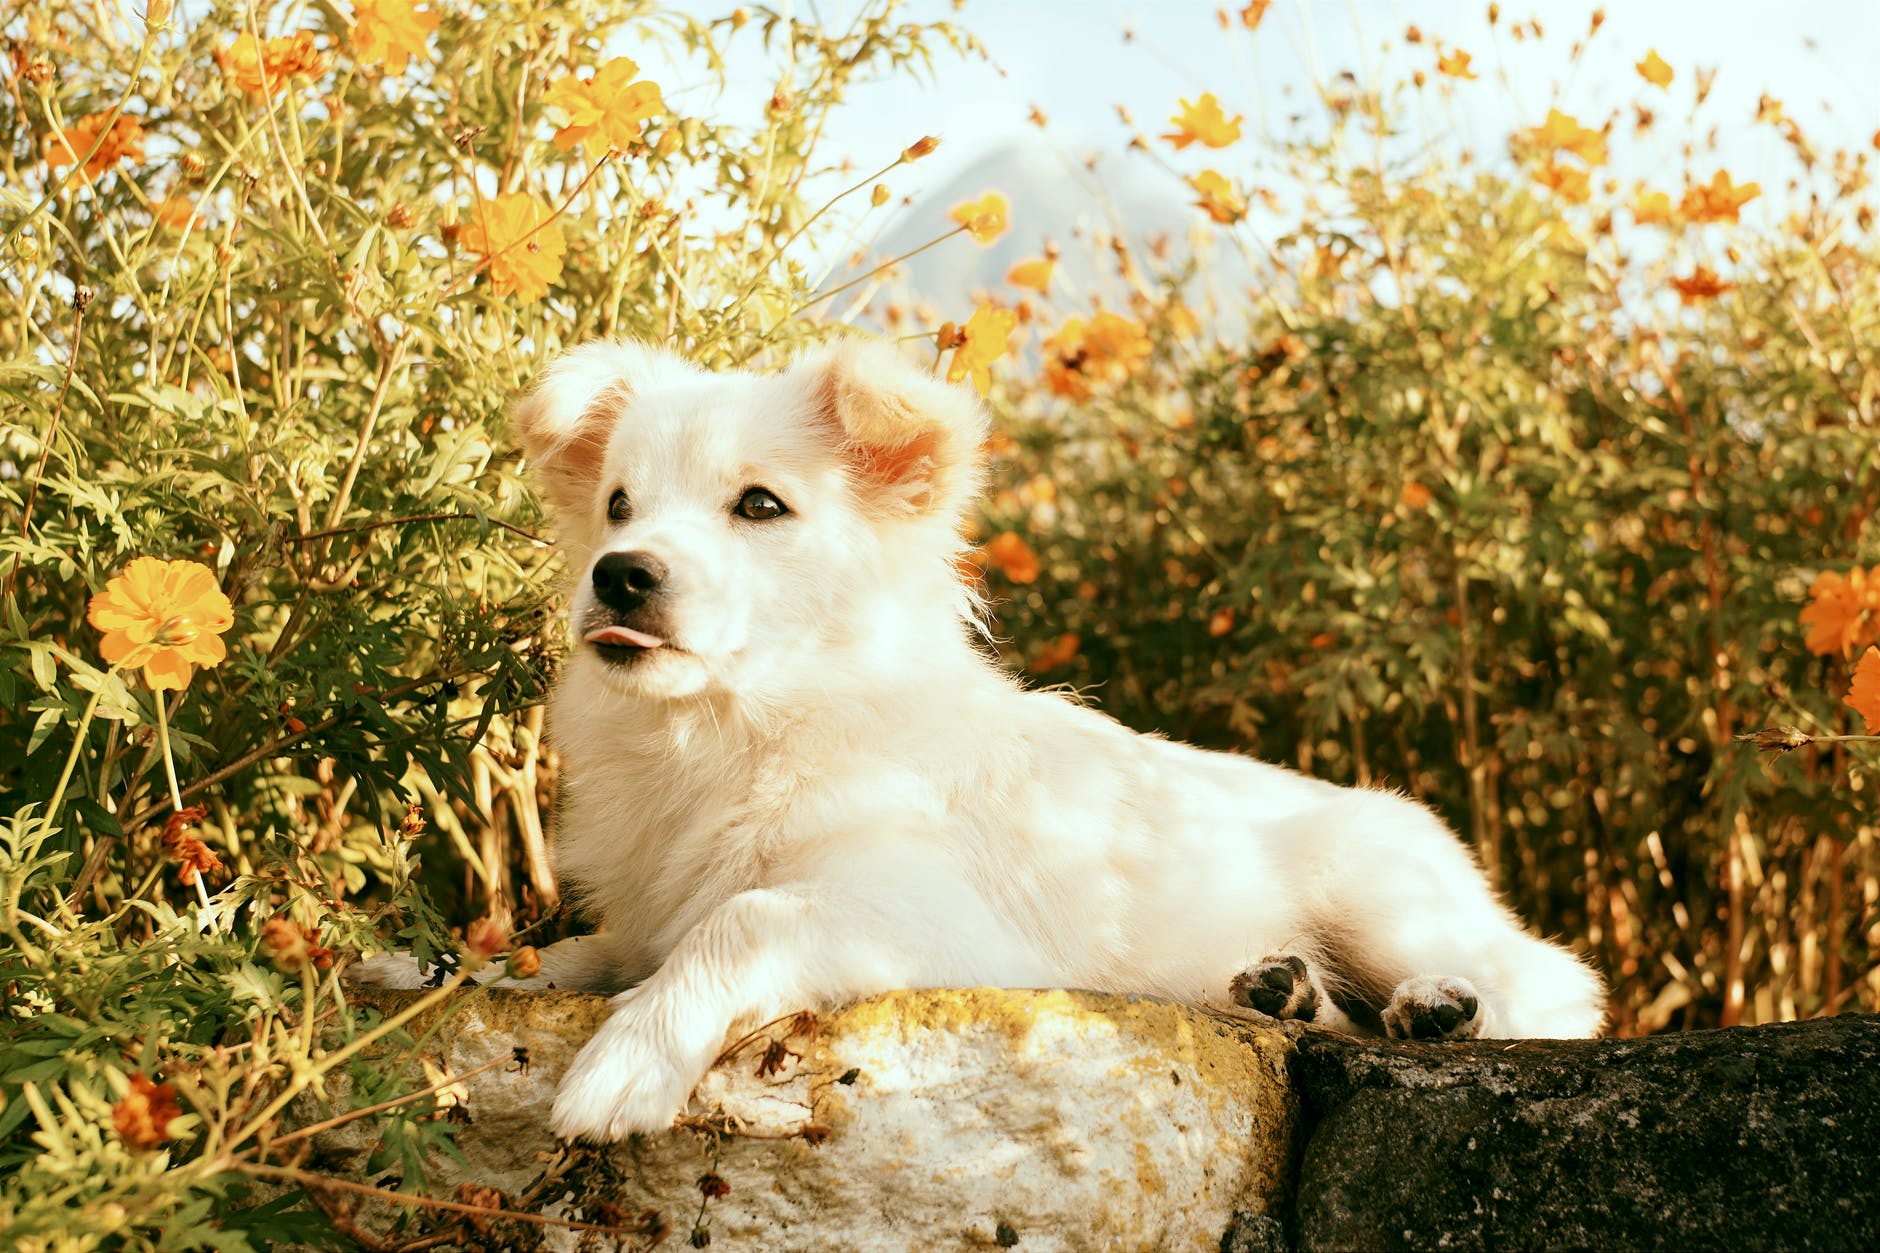 white fluffy dog among autumn flowers